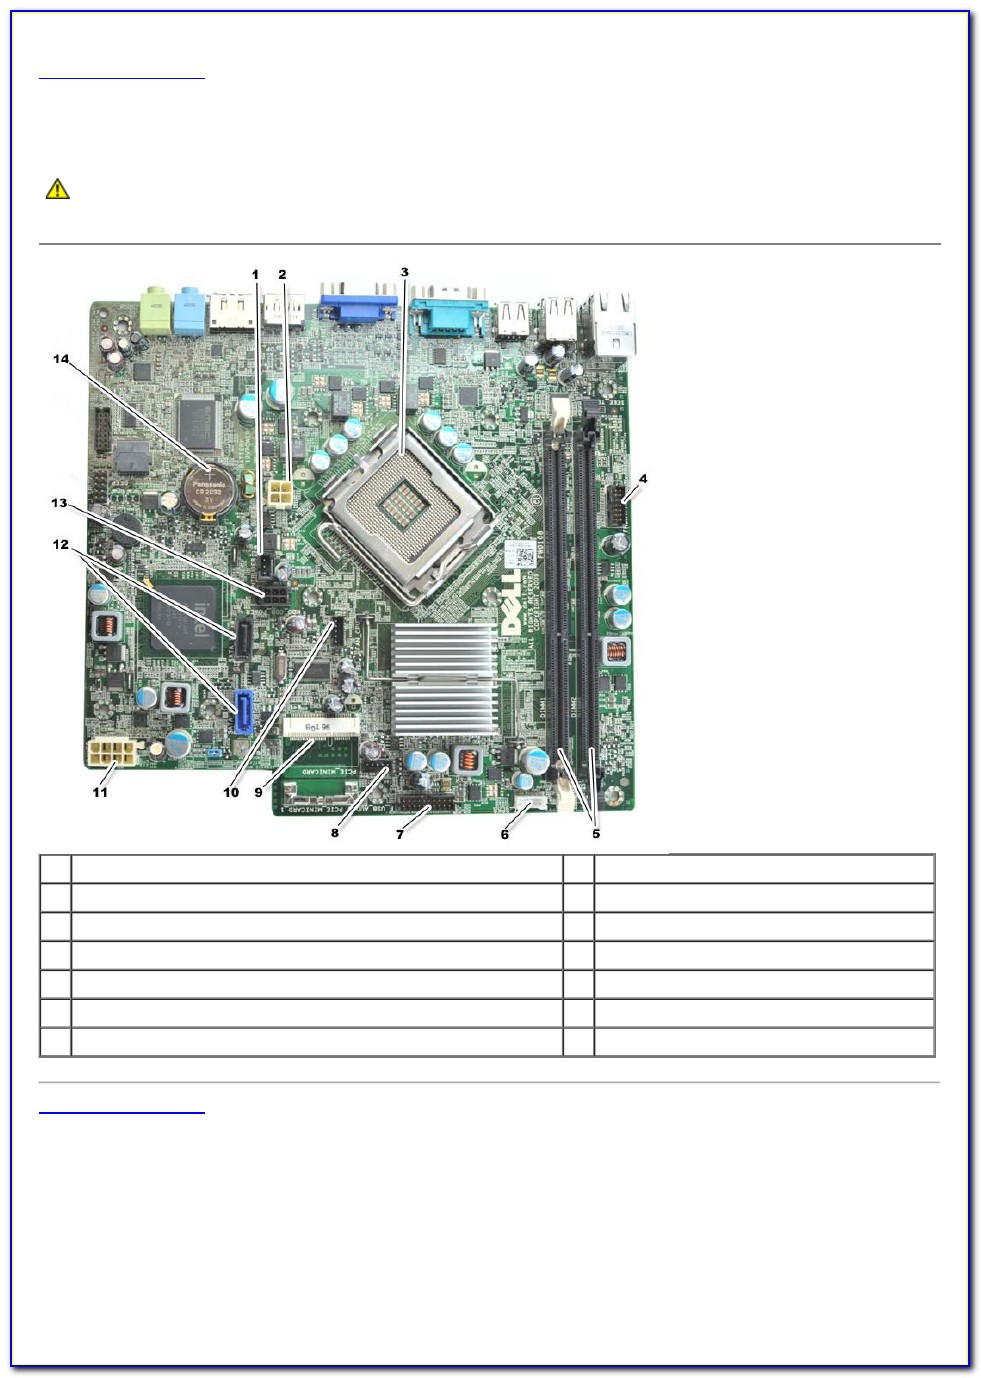 Dell 780 Motherboard Diagram